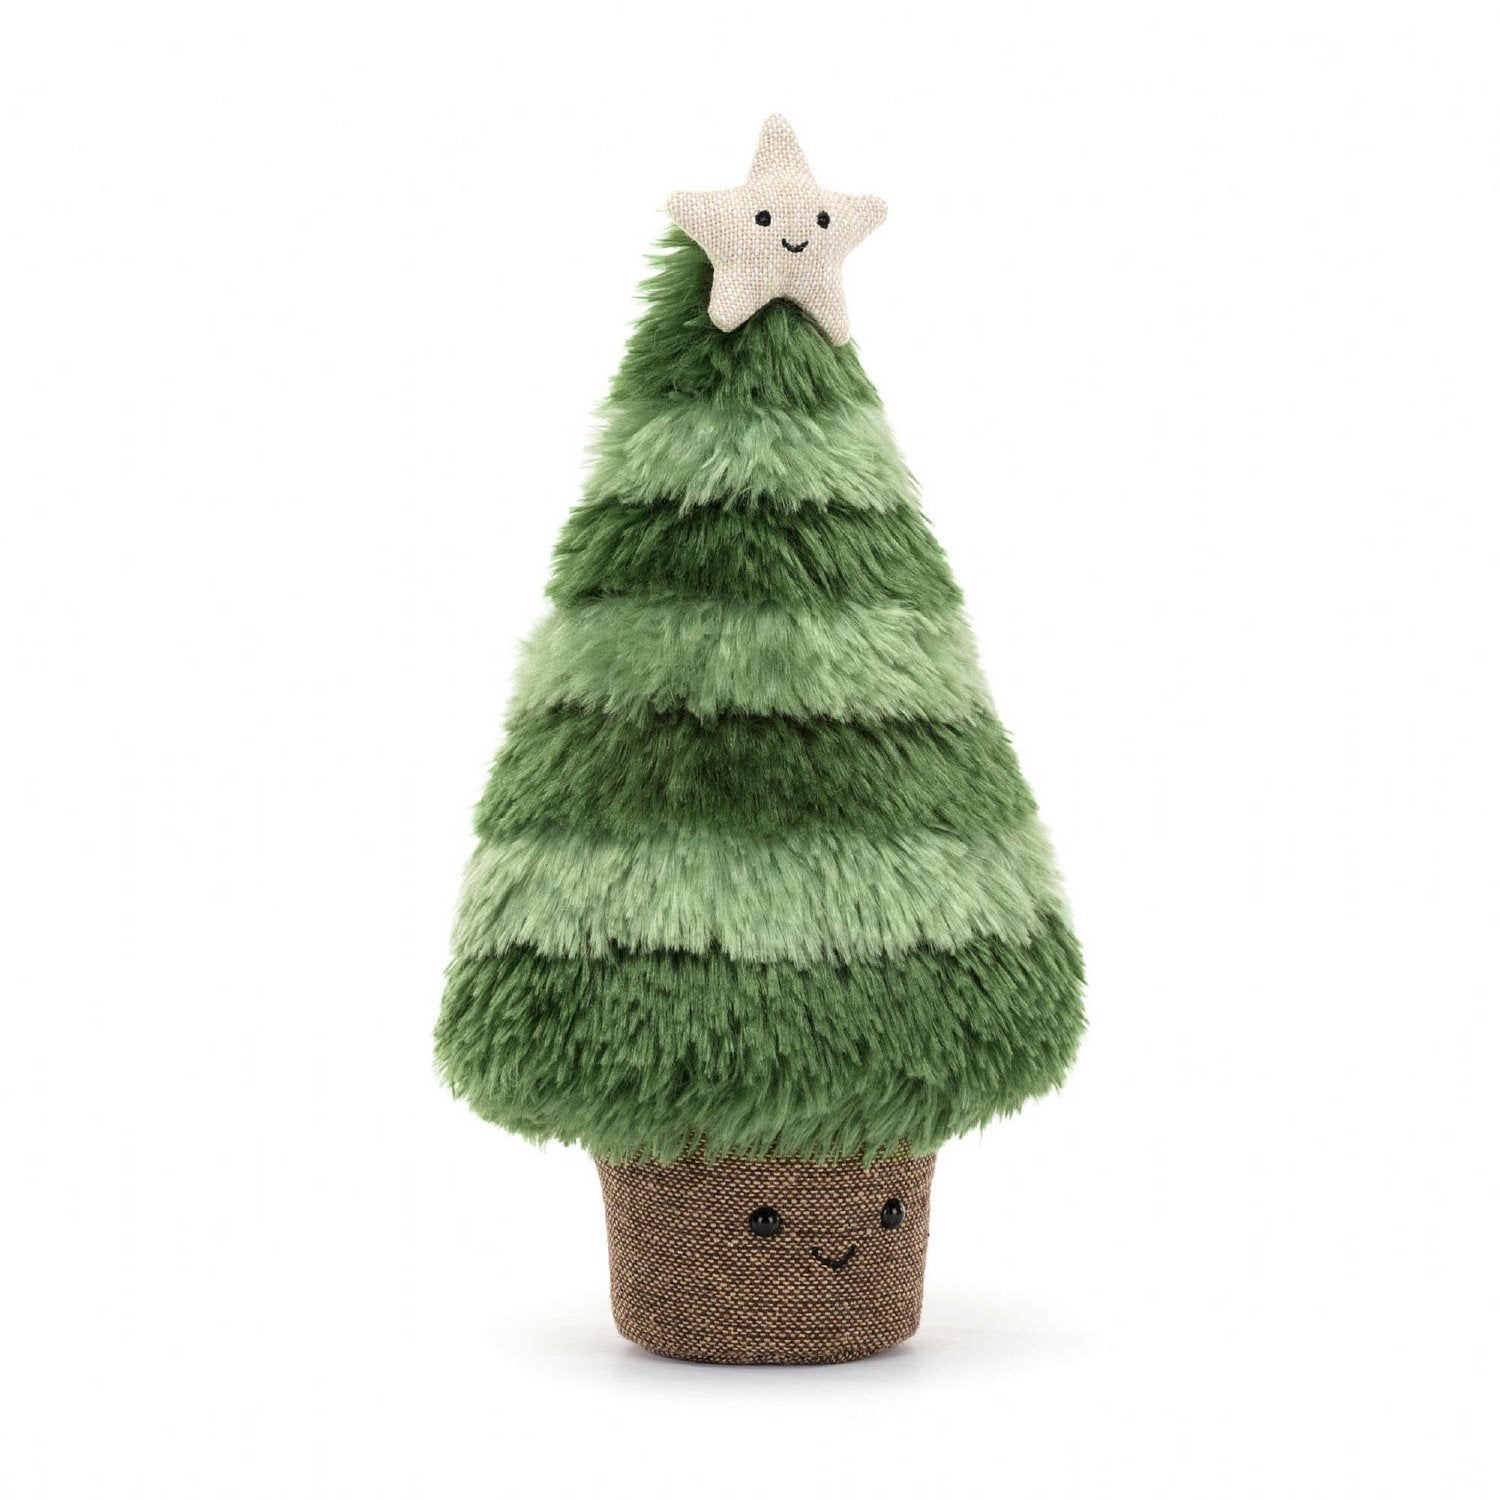 Amuseable Nordische Fichte Weihnachtsbaum (Nordic Spruce Christmas Tree Original)